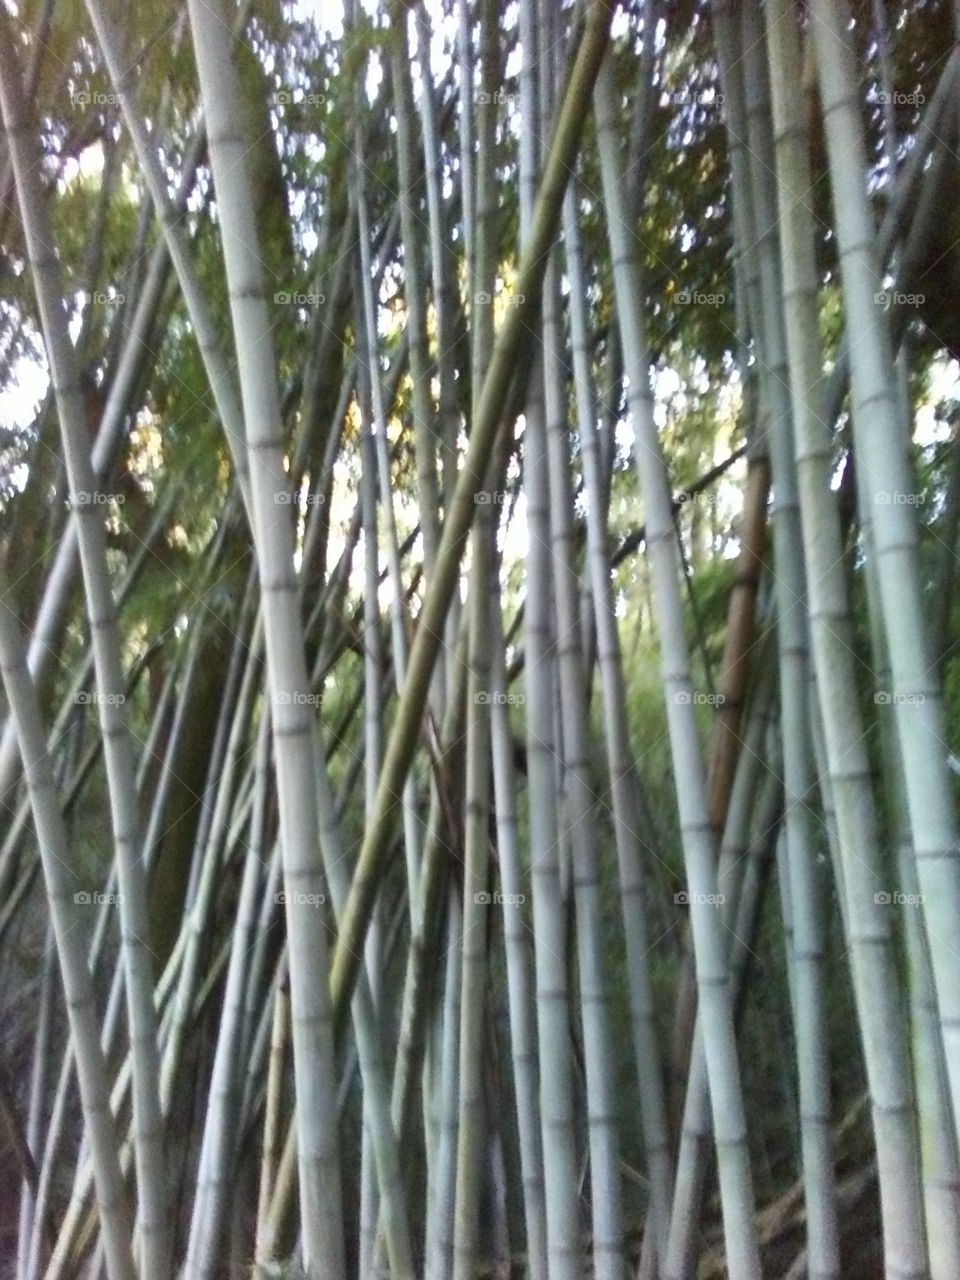 Bamboo madness